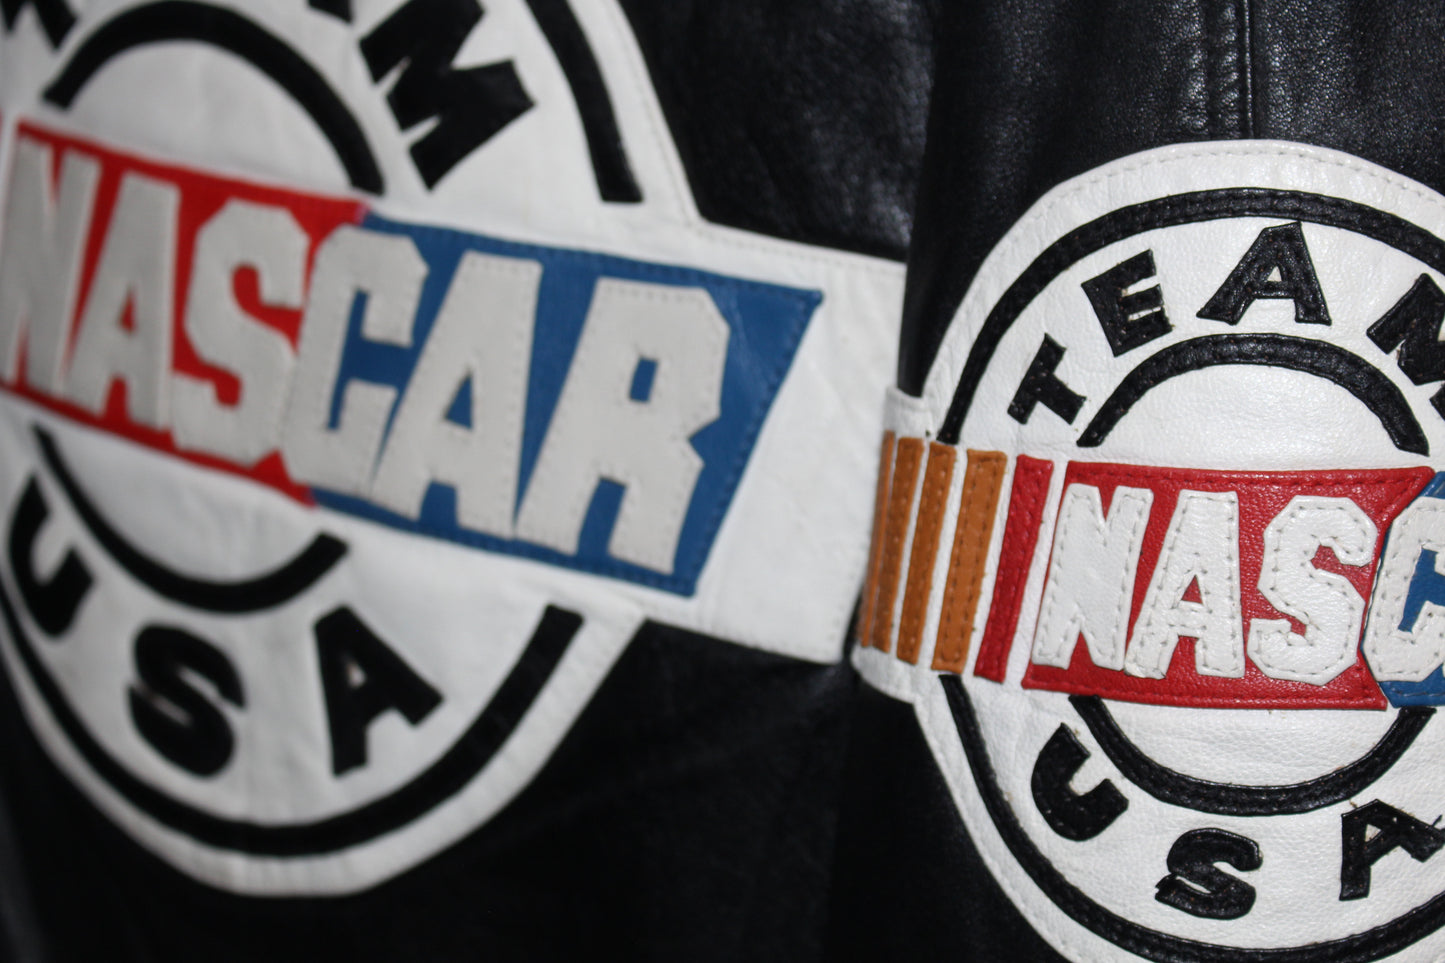 Rare NASCAR Leather Jacket (M)